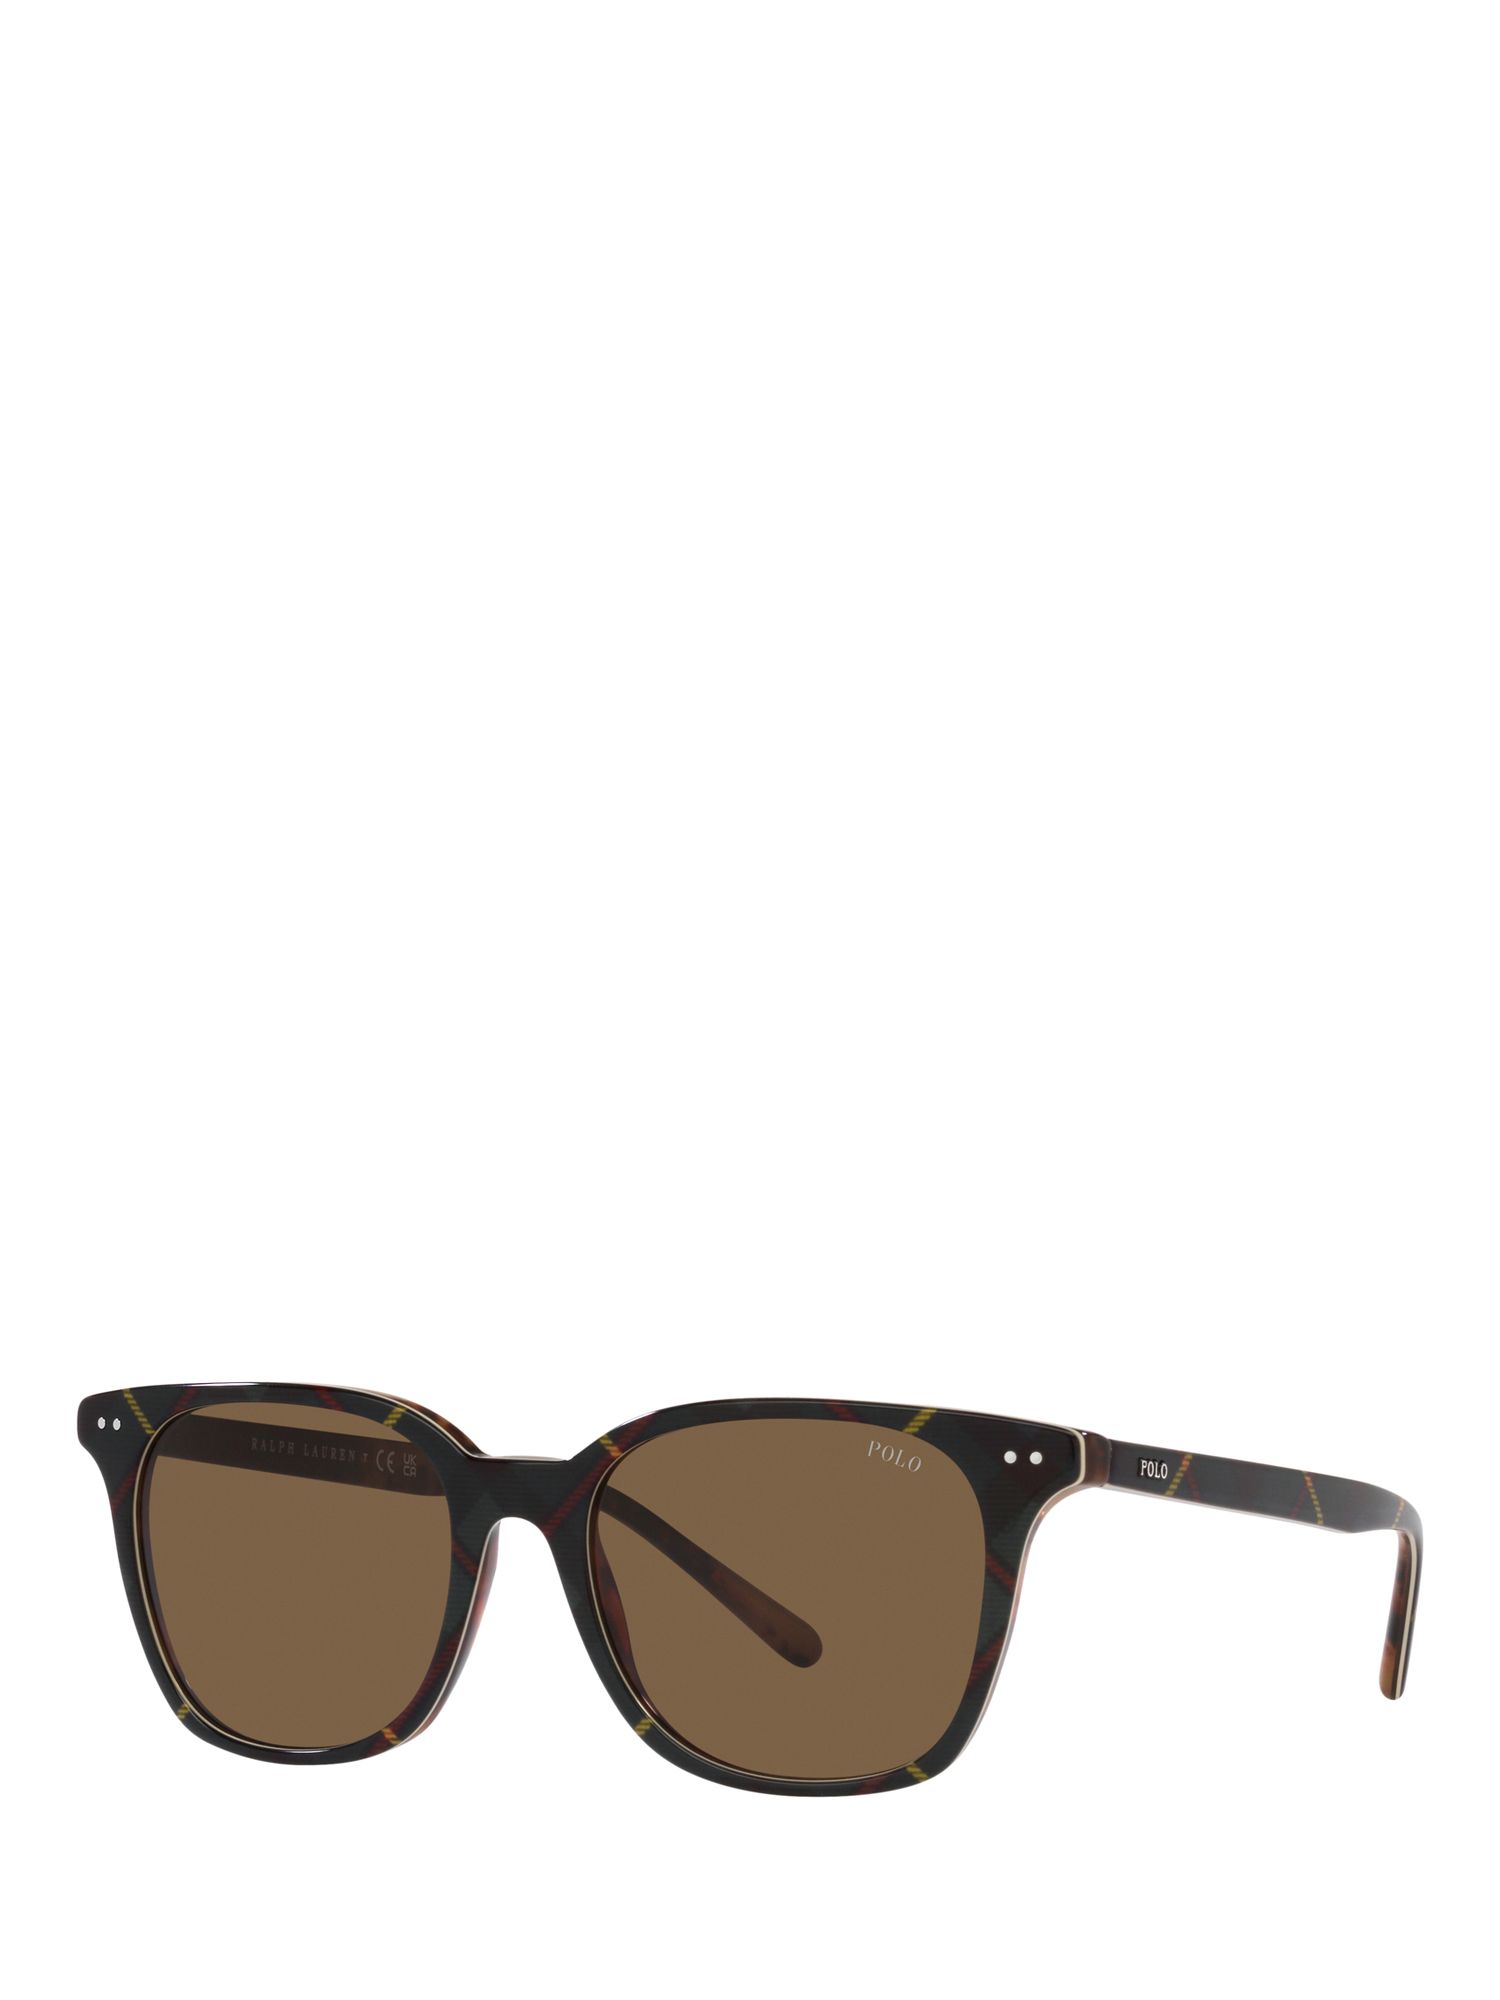 Мужские солнцезащитные очки Polo PH4187 Ralph Lauren, блестящее платье гордон/коричневый солнцезащитные очки ralph 0ra5160 501 11